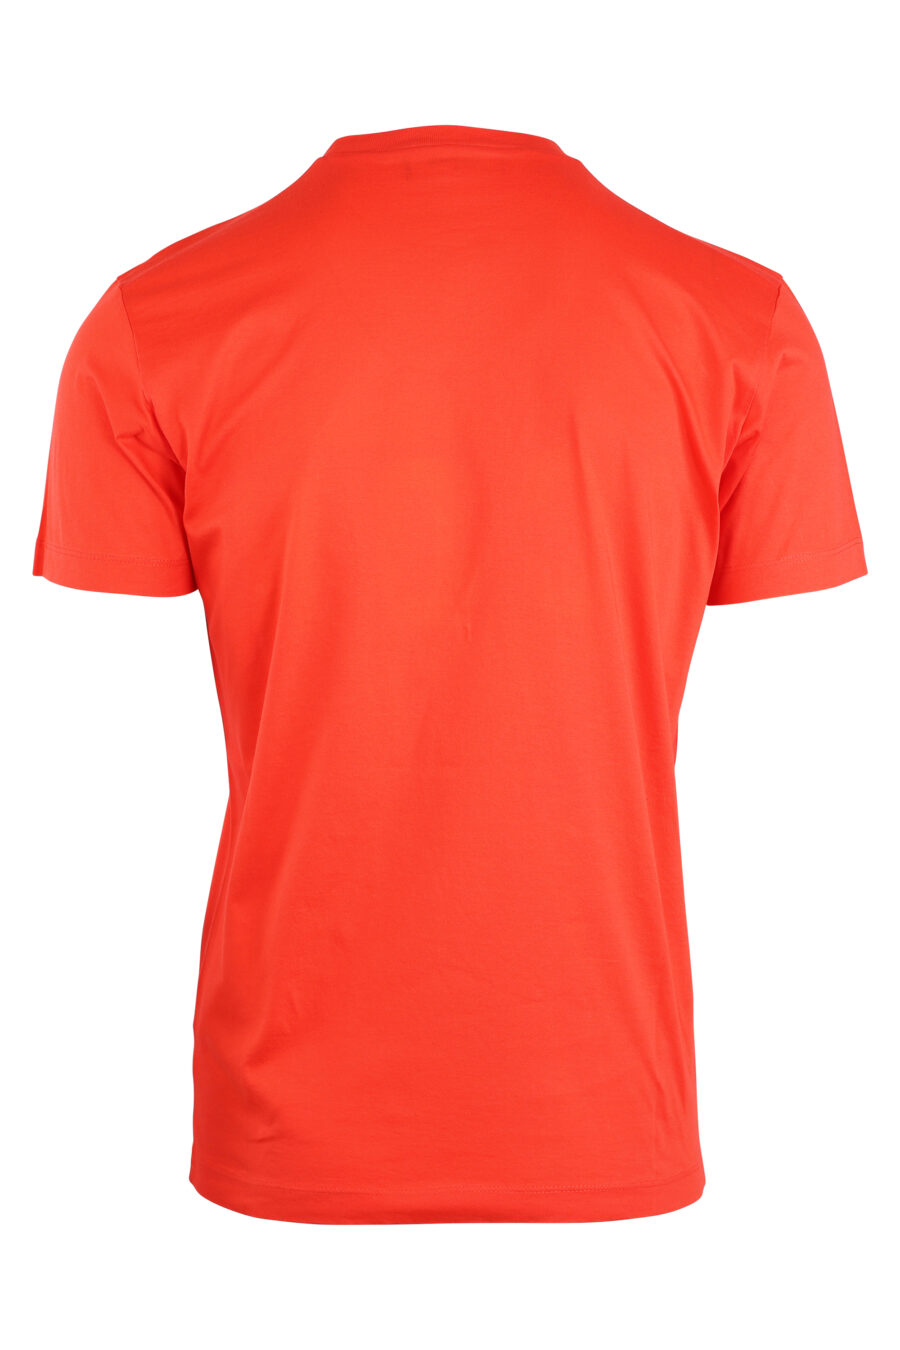 Camiseta naranja con doble logo "icon" - IMG 8929